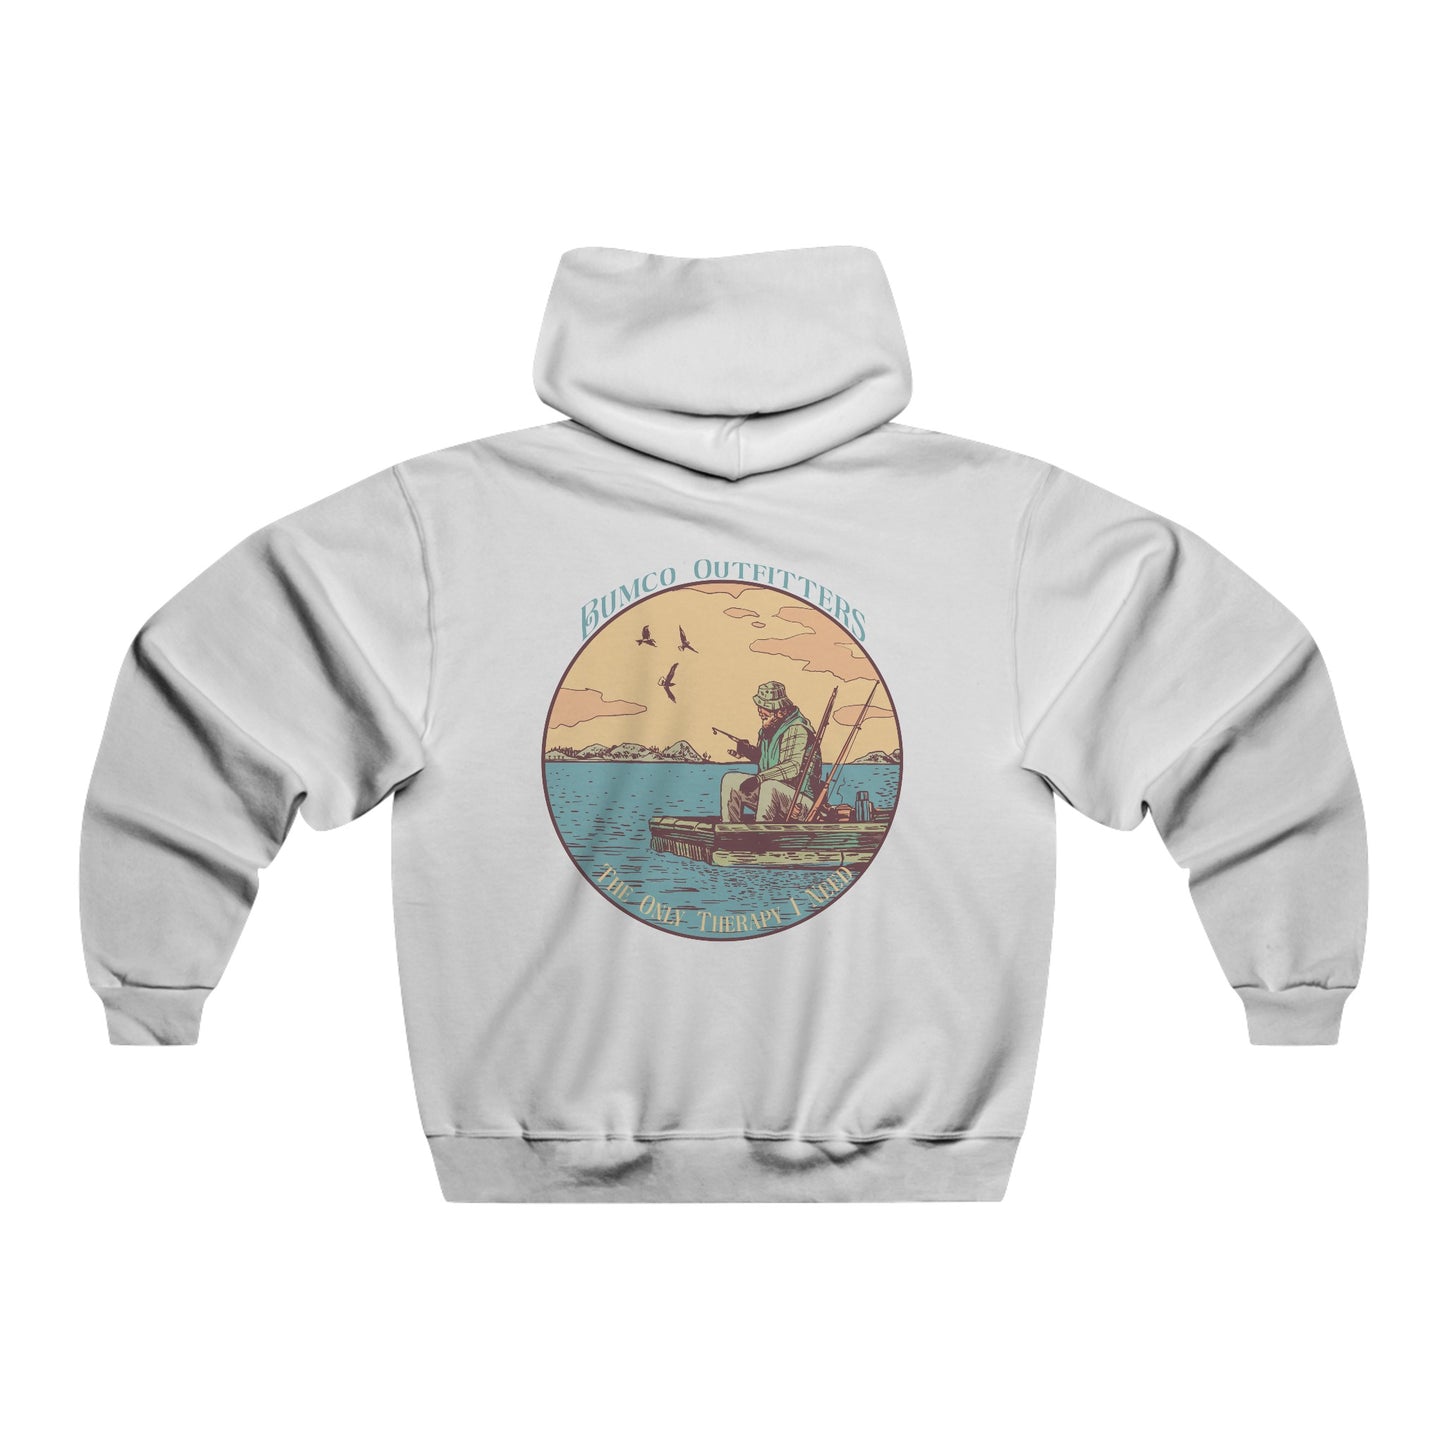 Fishing Therapy - Hooded Sweatshirt